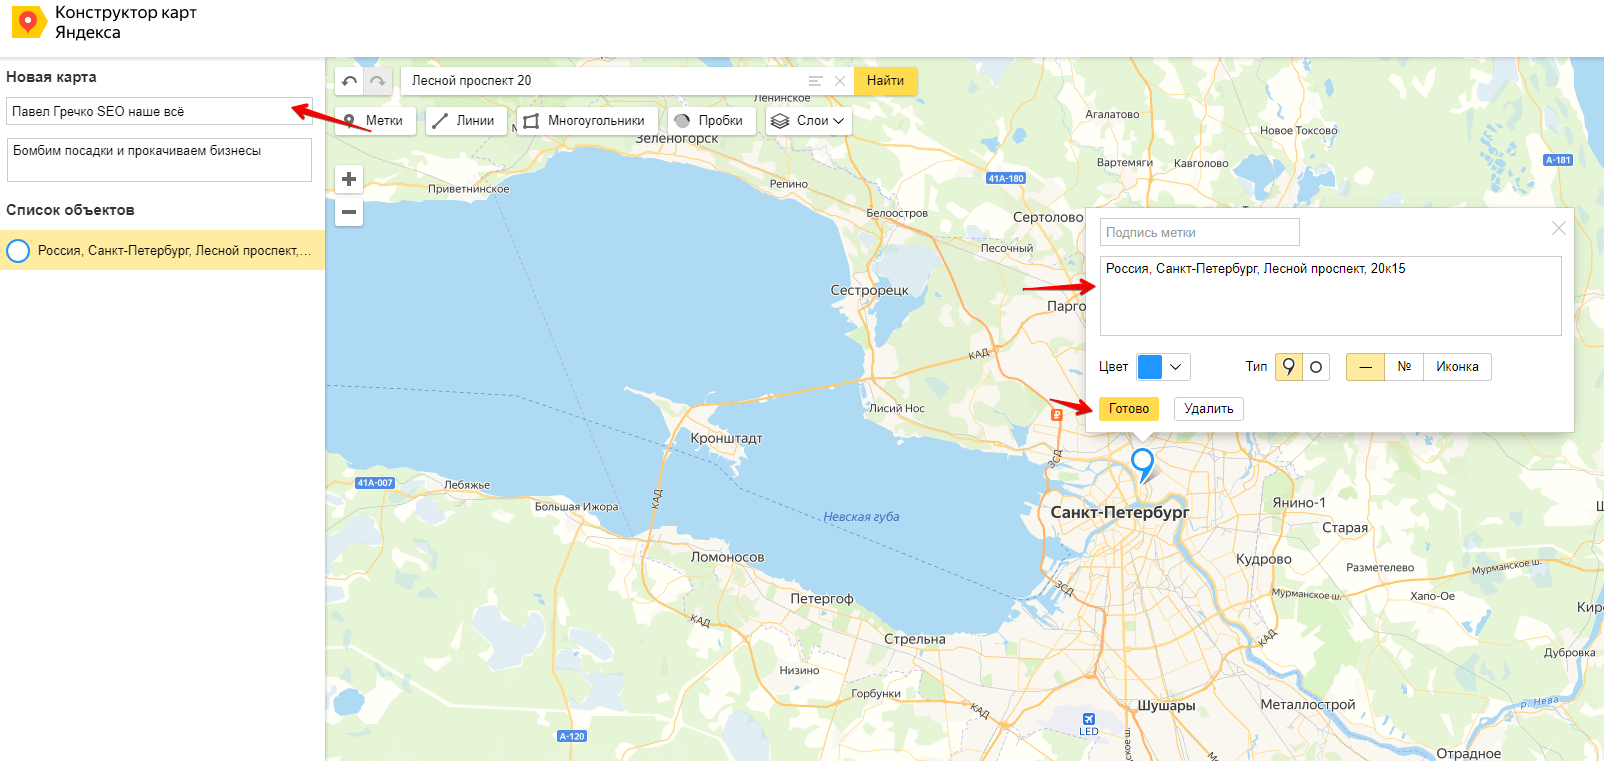 Как в Elementor добавить Яндекс карту